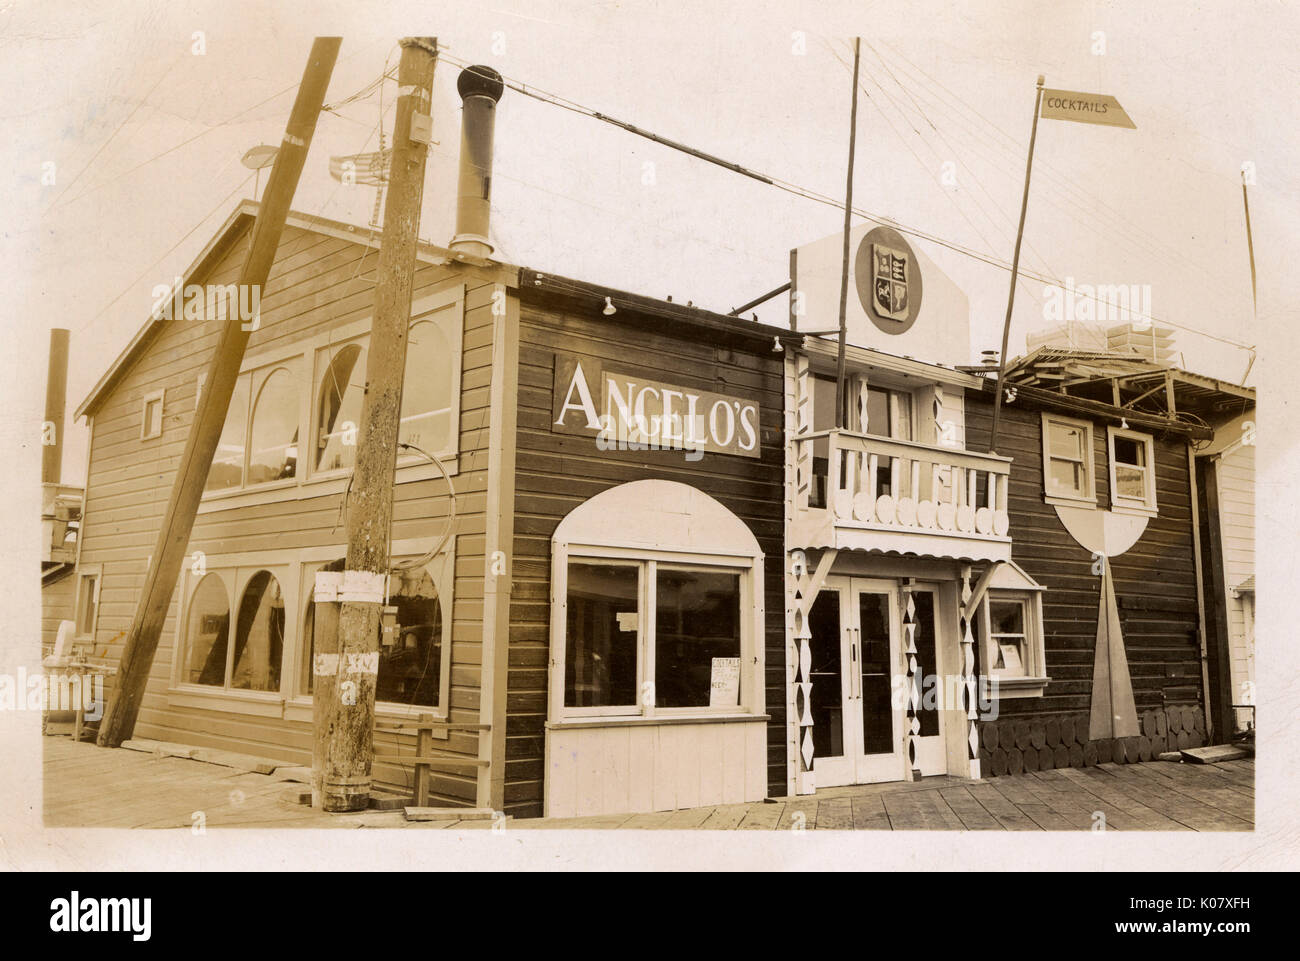 Angelo's Seafood Restaurant sowie Cocktails, Monterey, Kalifornien, USA. Datum: ca. 1930 s Stockfoto